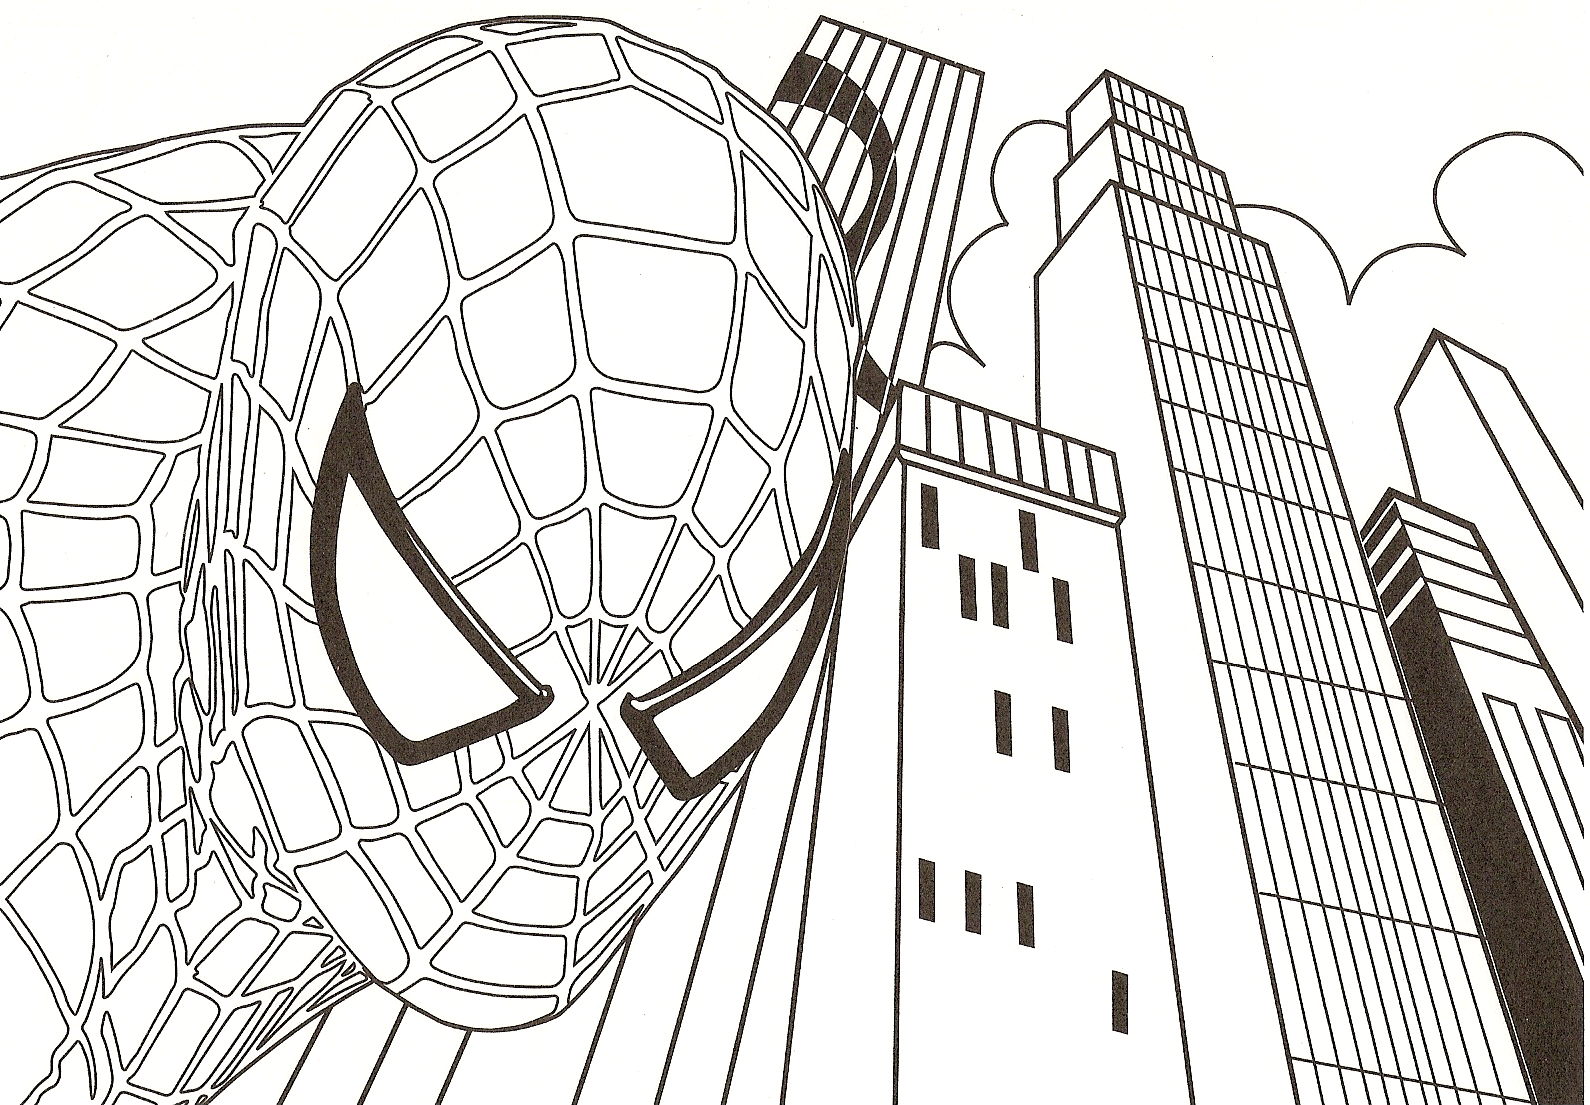 Páginas para colorear de Spiderman para imprimir gratis - Spiderman - Just  Color Niños : Dibujos para colorear para niños